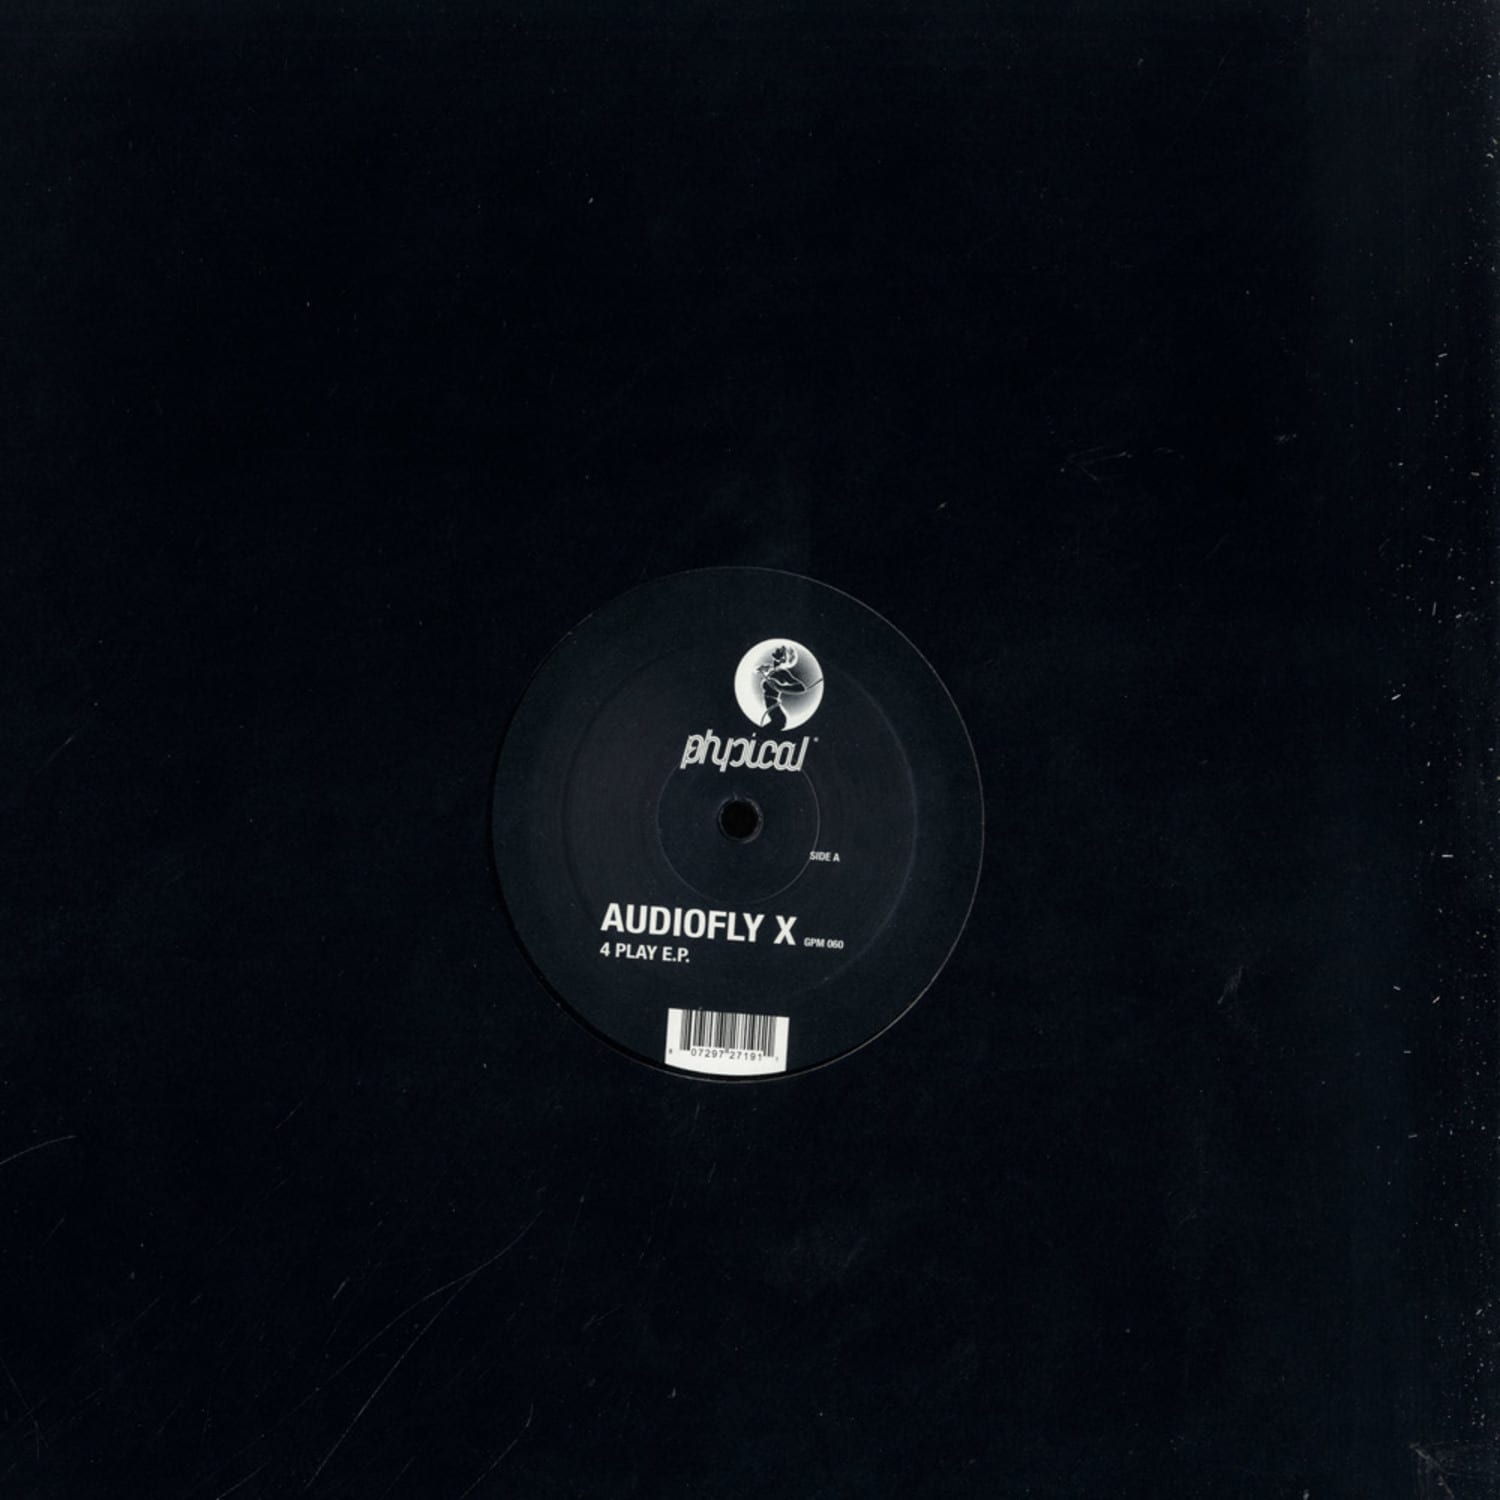 Audiofly X - 4 PLAY EP